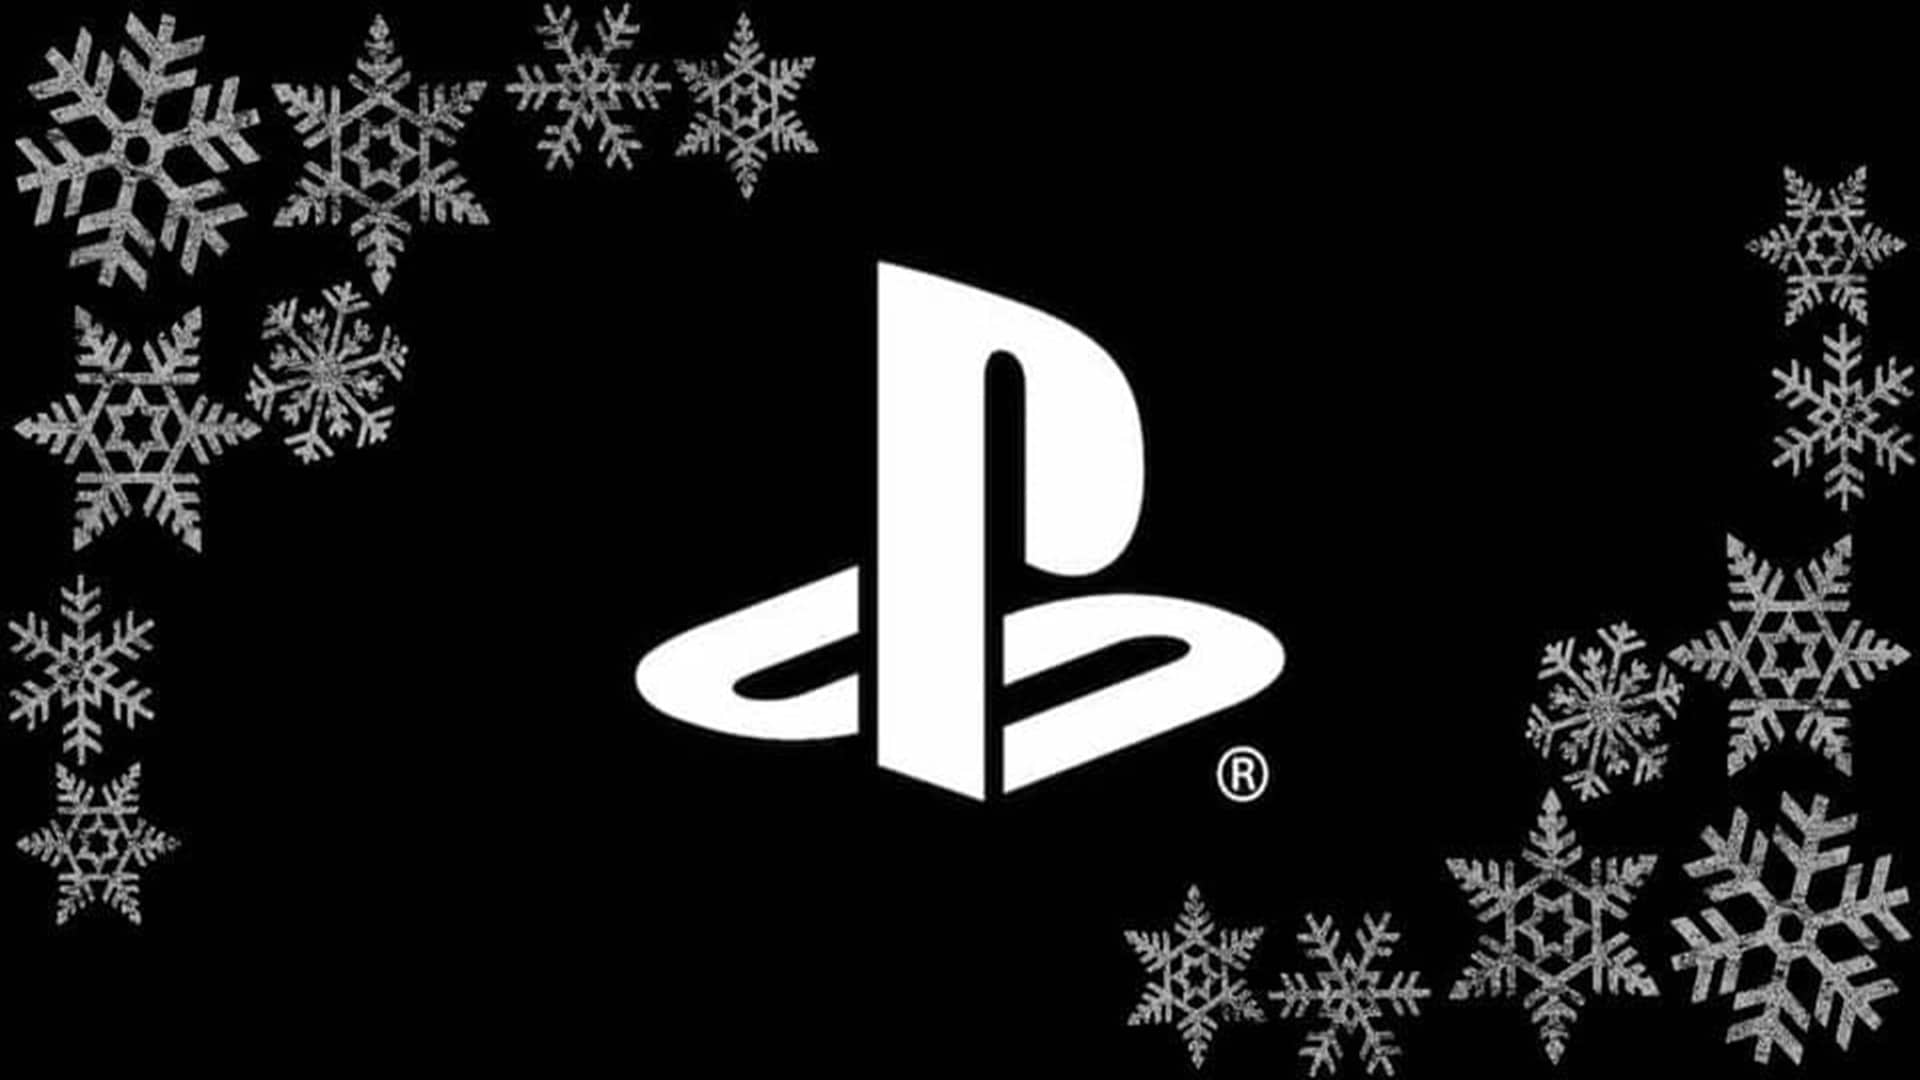 PlayStation comparte más tarjetas navideñas con temas de videojuegos, GamersRD